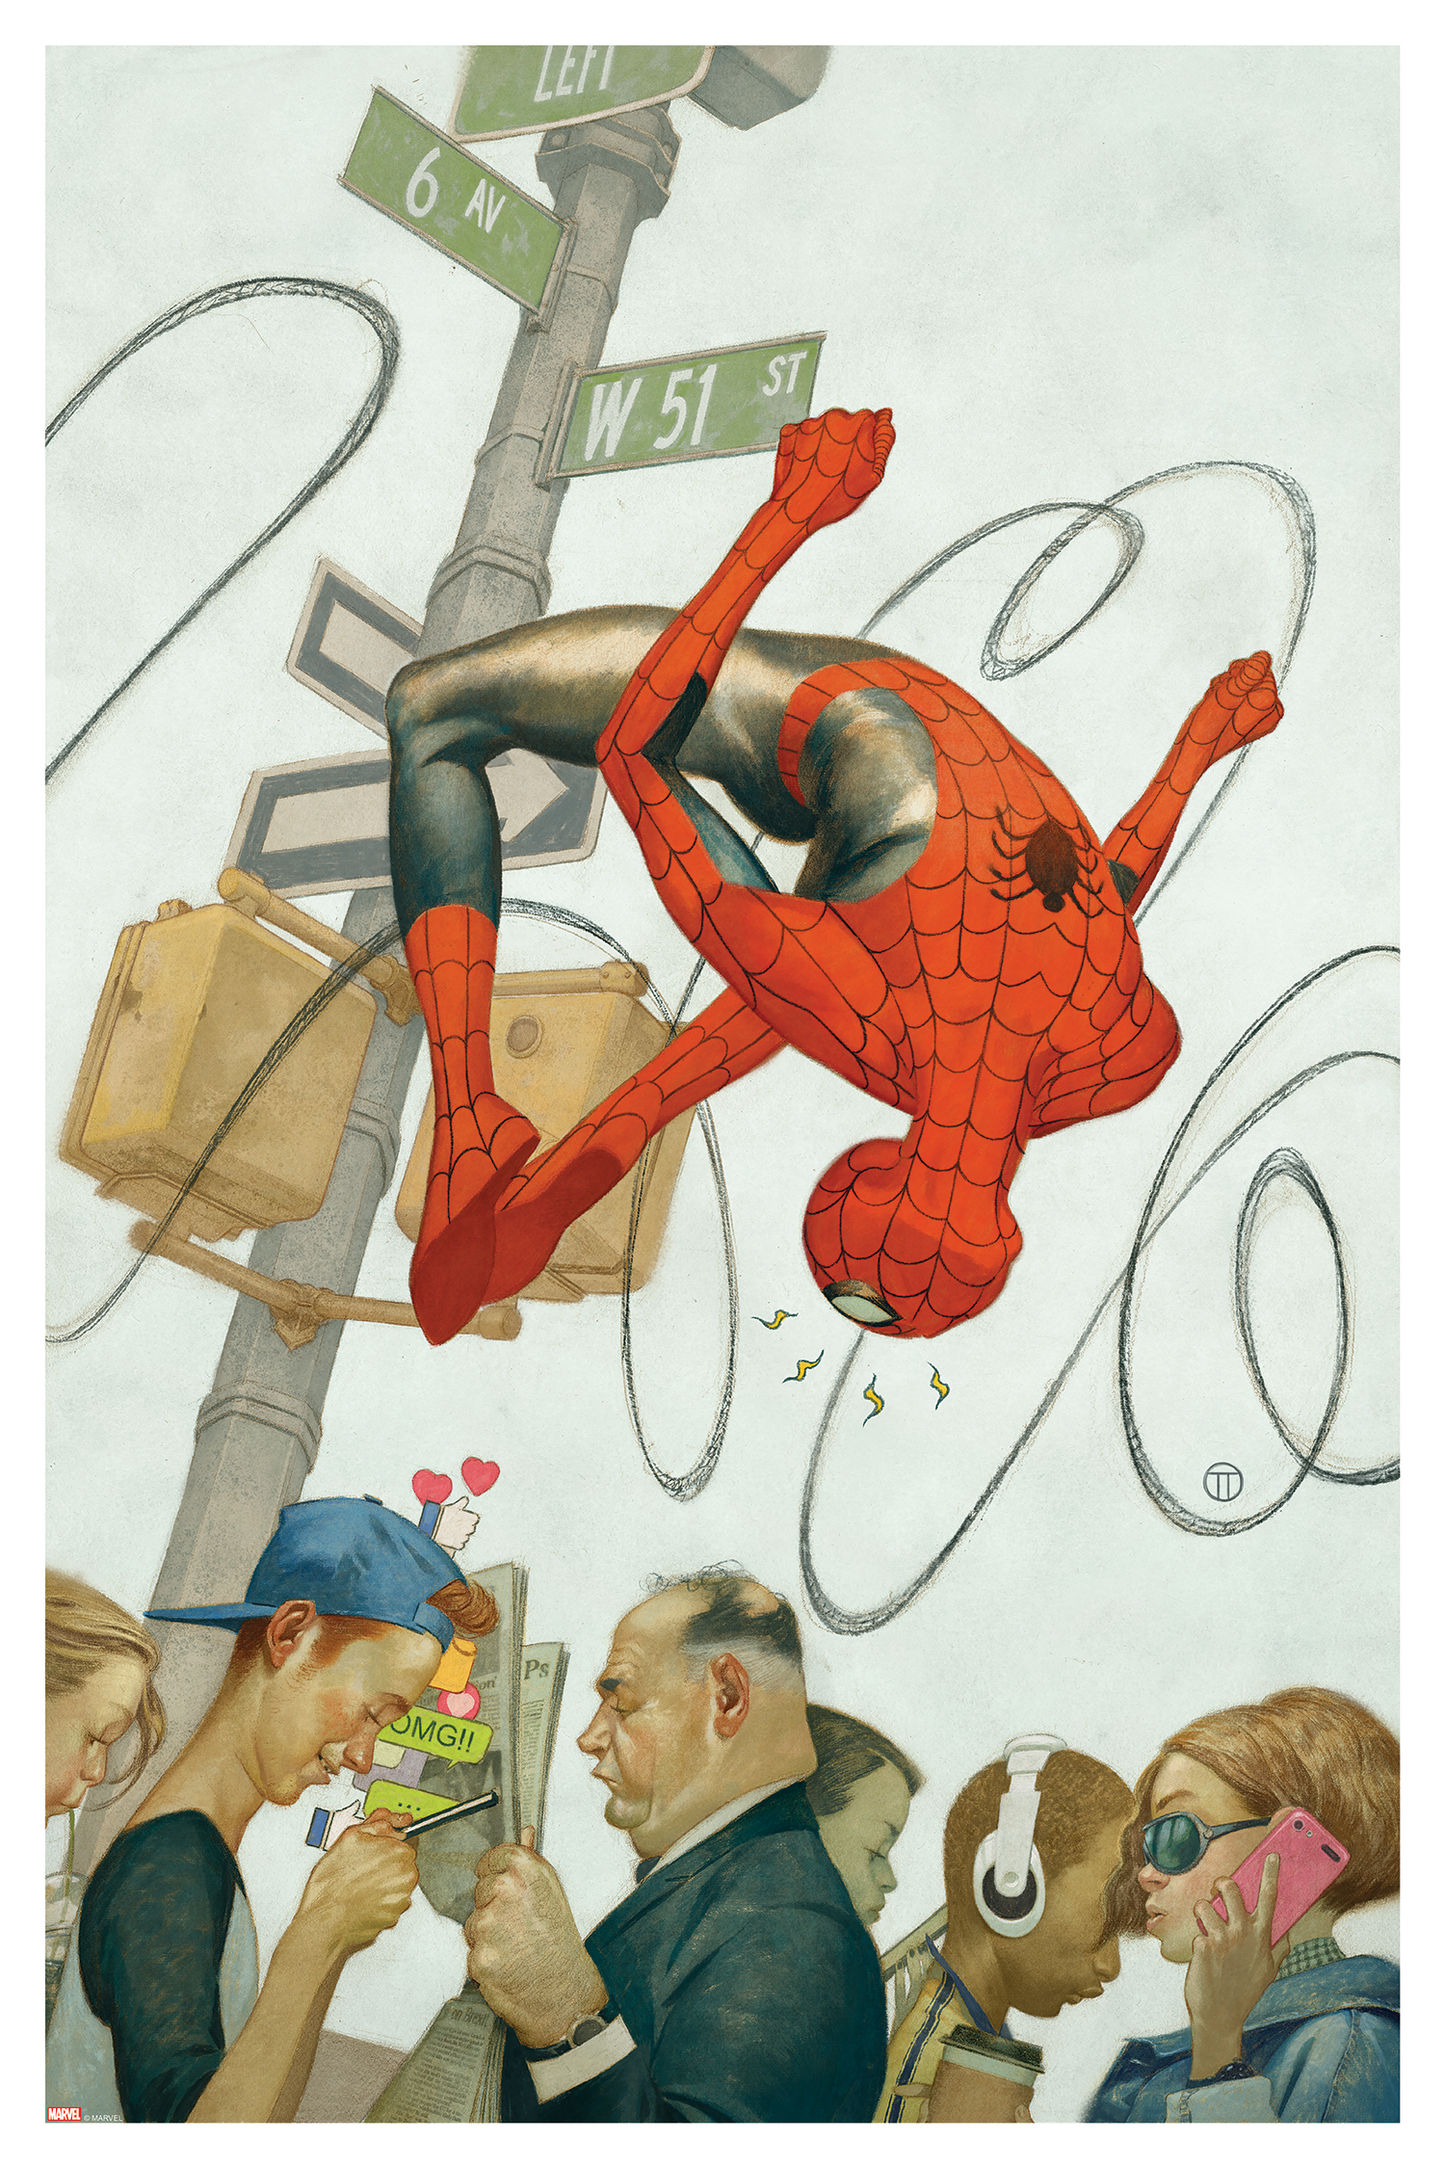 Julian Totino "Spider-Man #61"